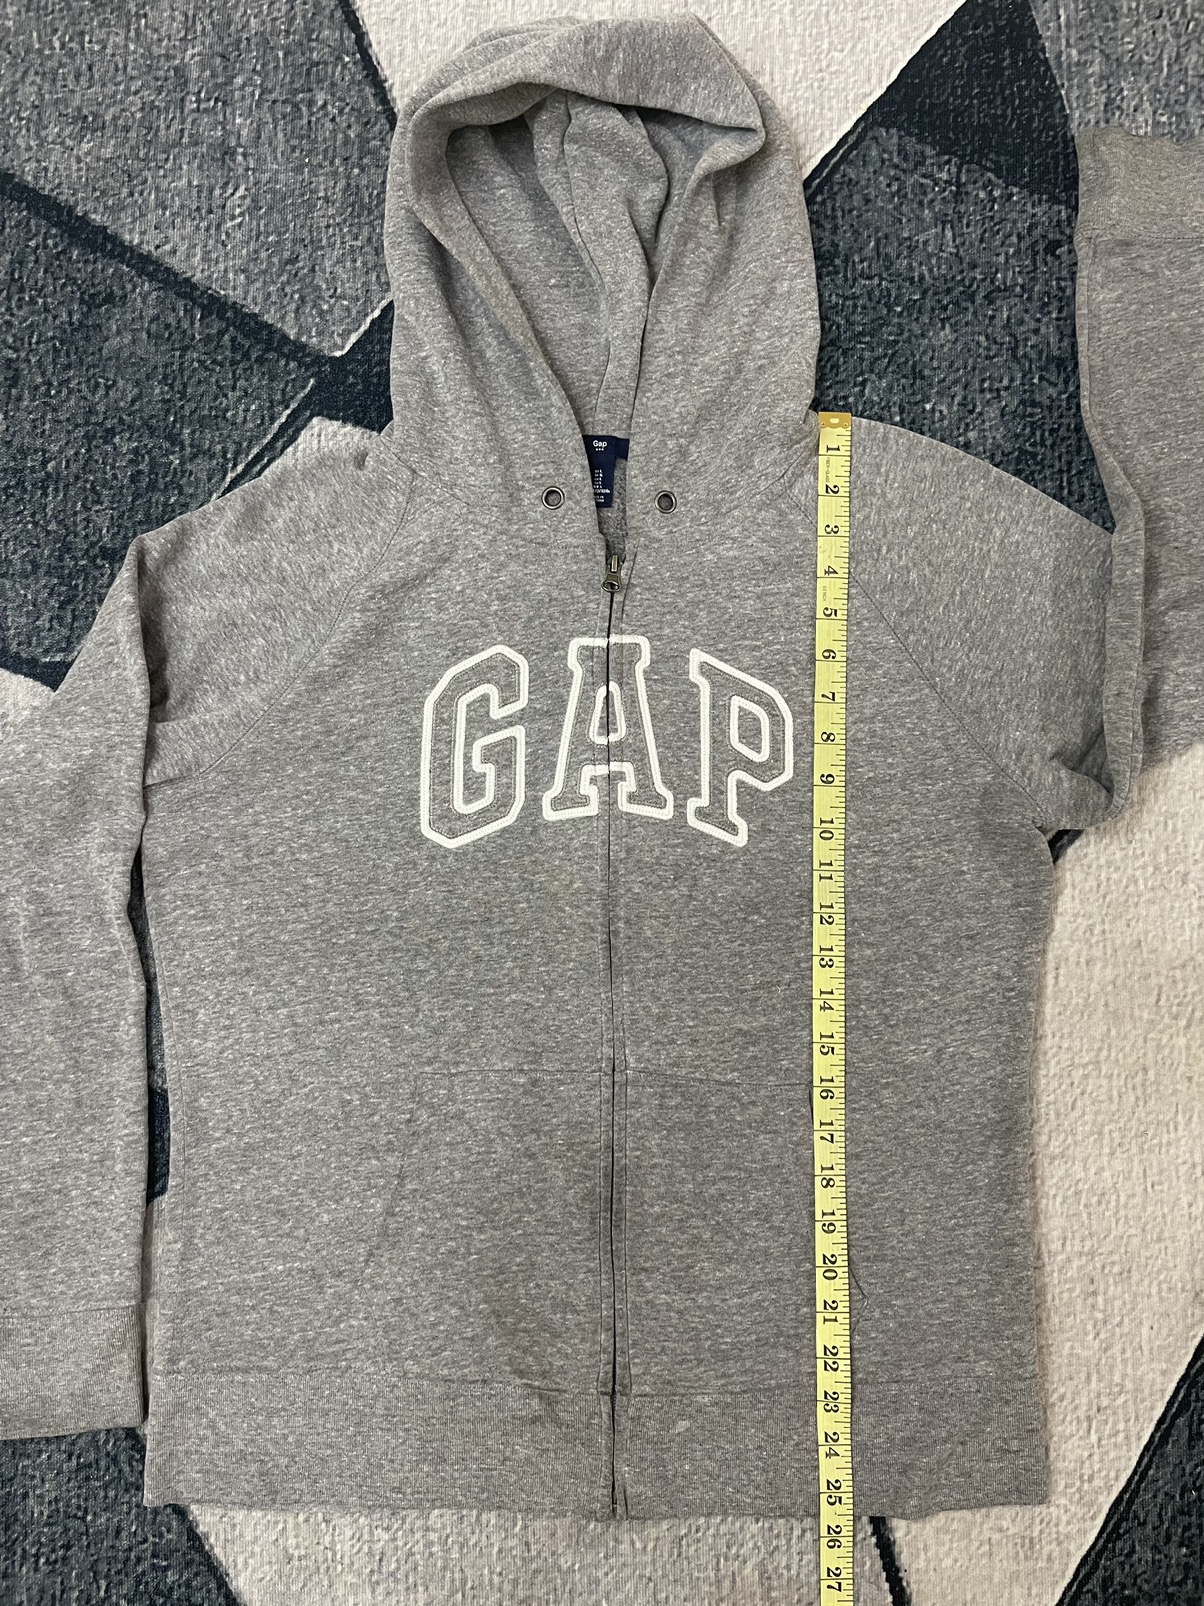 Gap - GAP zip up Hoodie Spell Out Streetwear / Vintage - 5